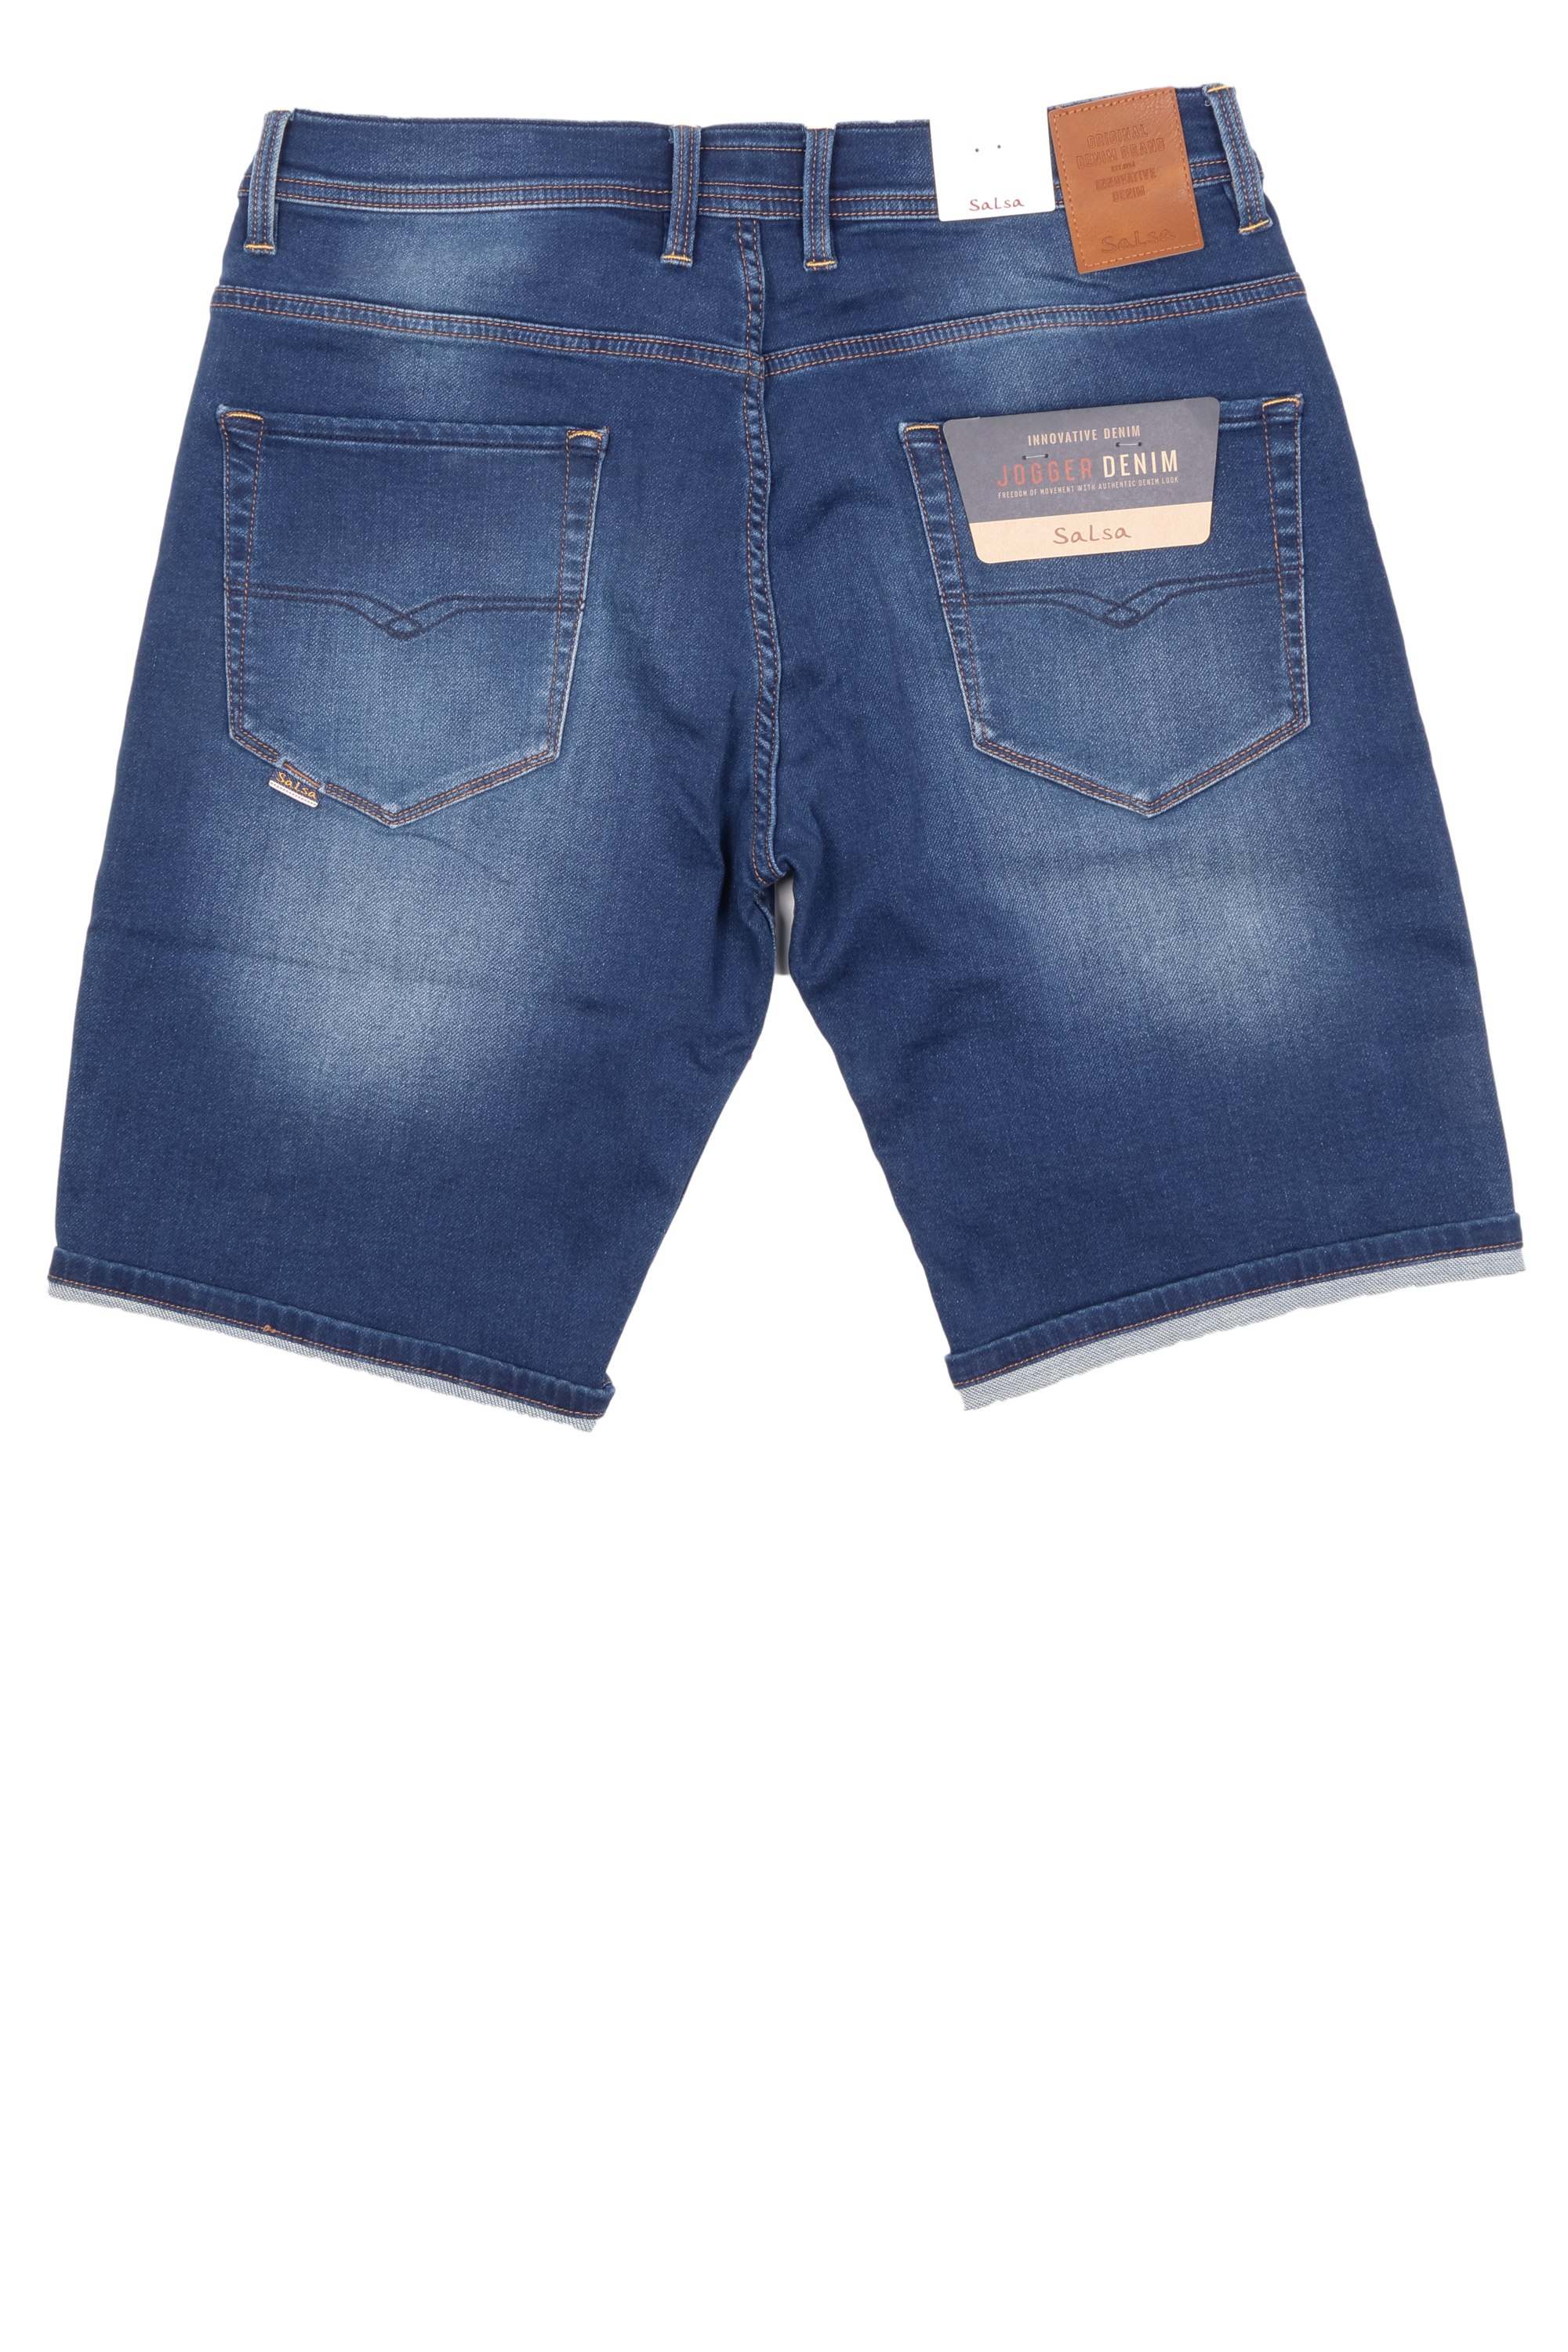 Salsa Herren Jeans Shorts Jog-Denim - blau 36